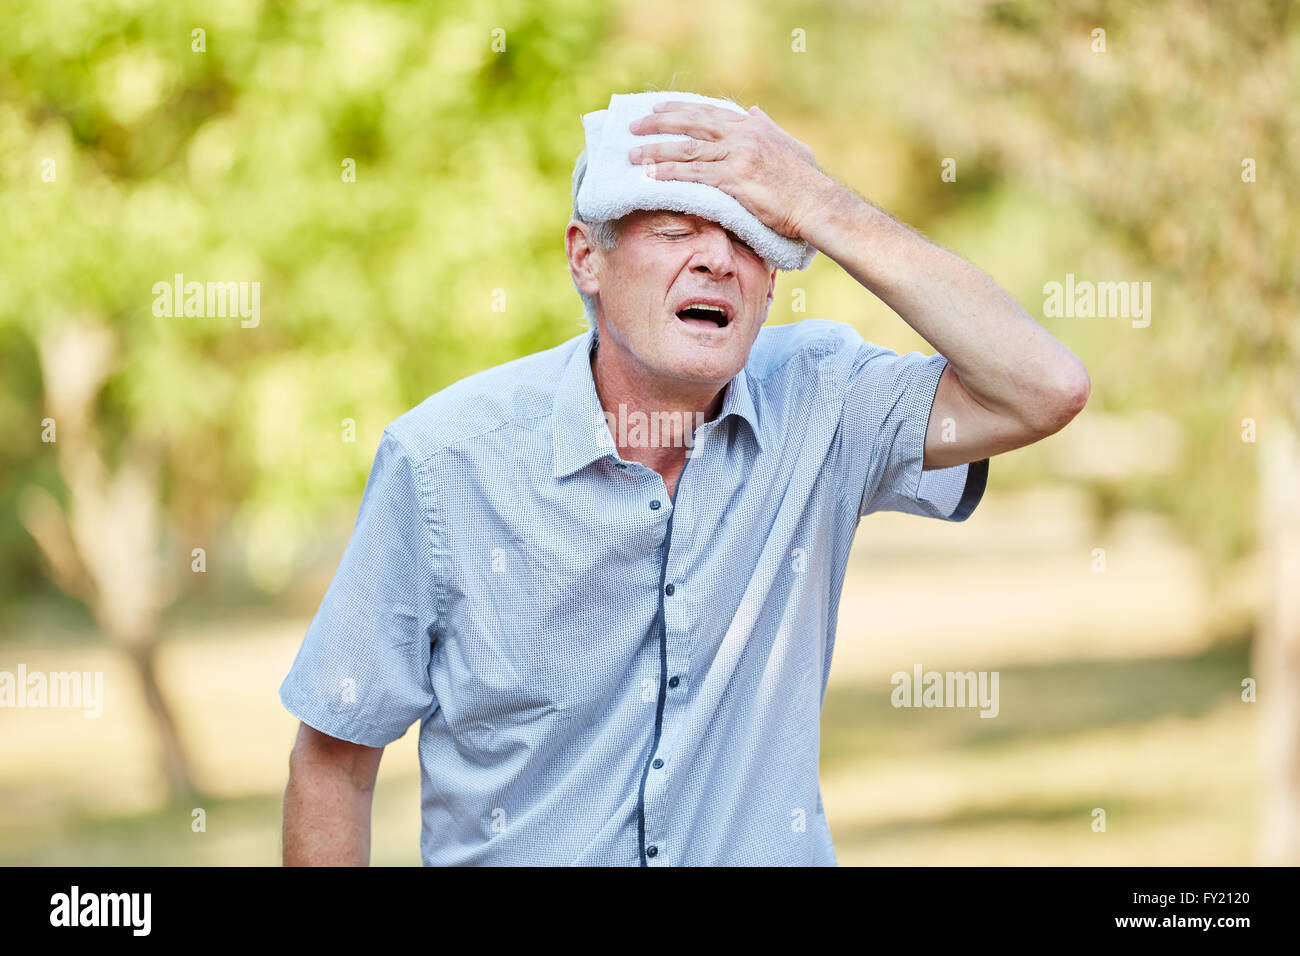 Senior Ohnmacht Mann seinen Kopf mit einem feuchten Tuch abkühlen Stockfoto